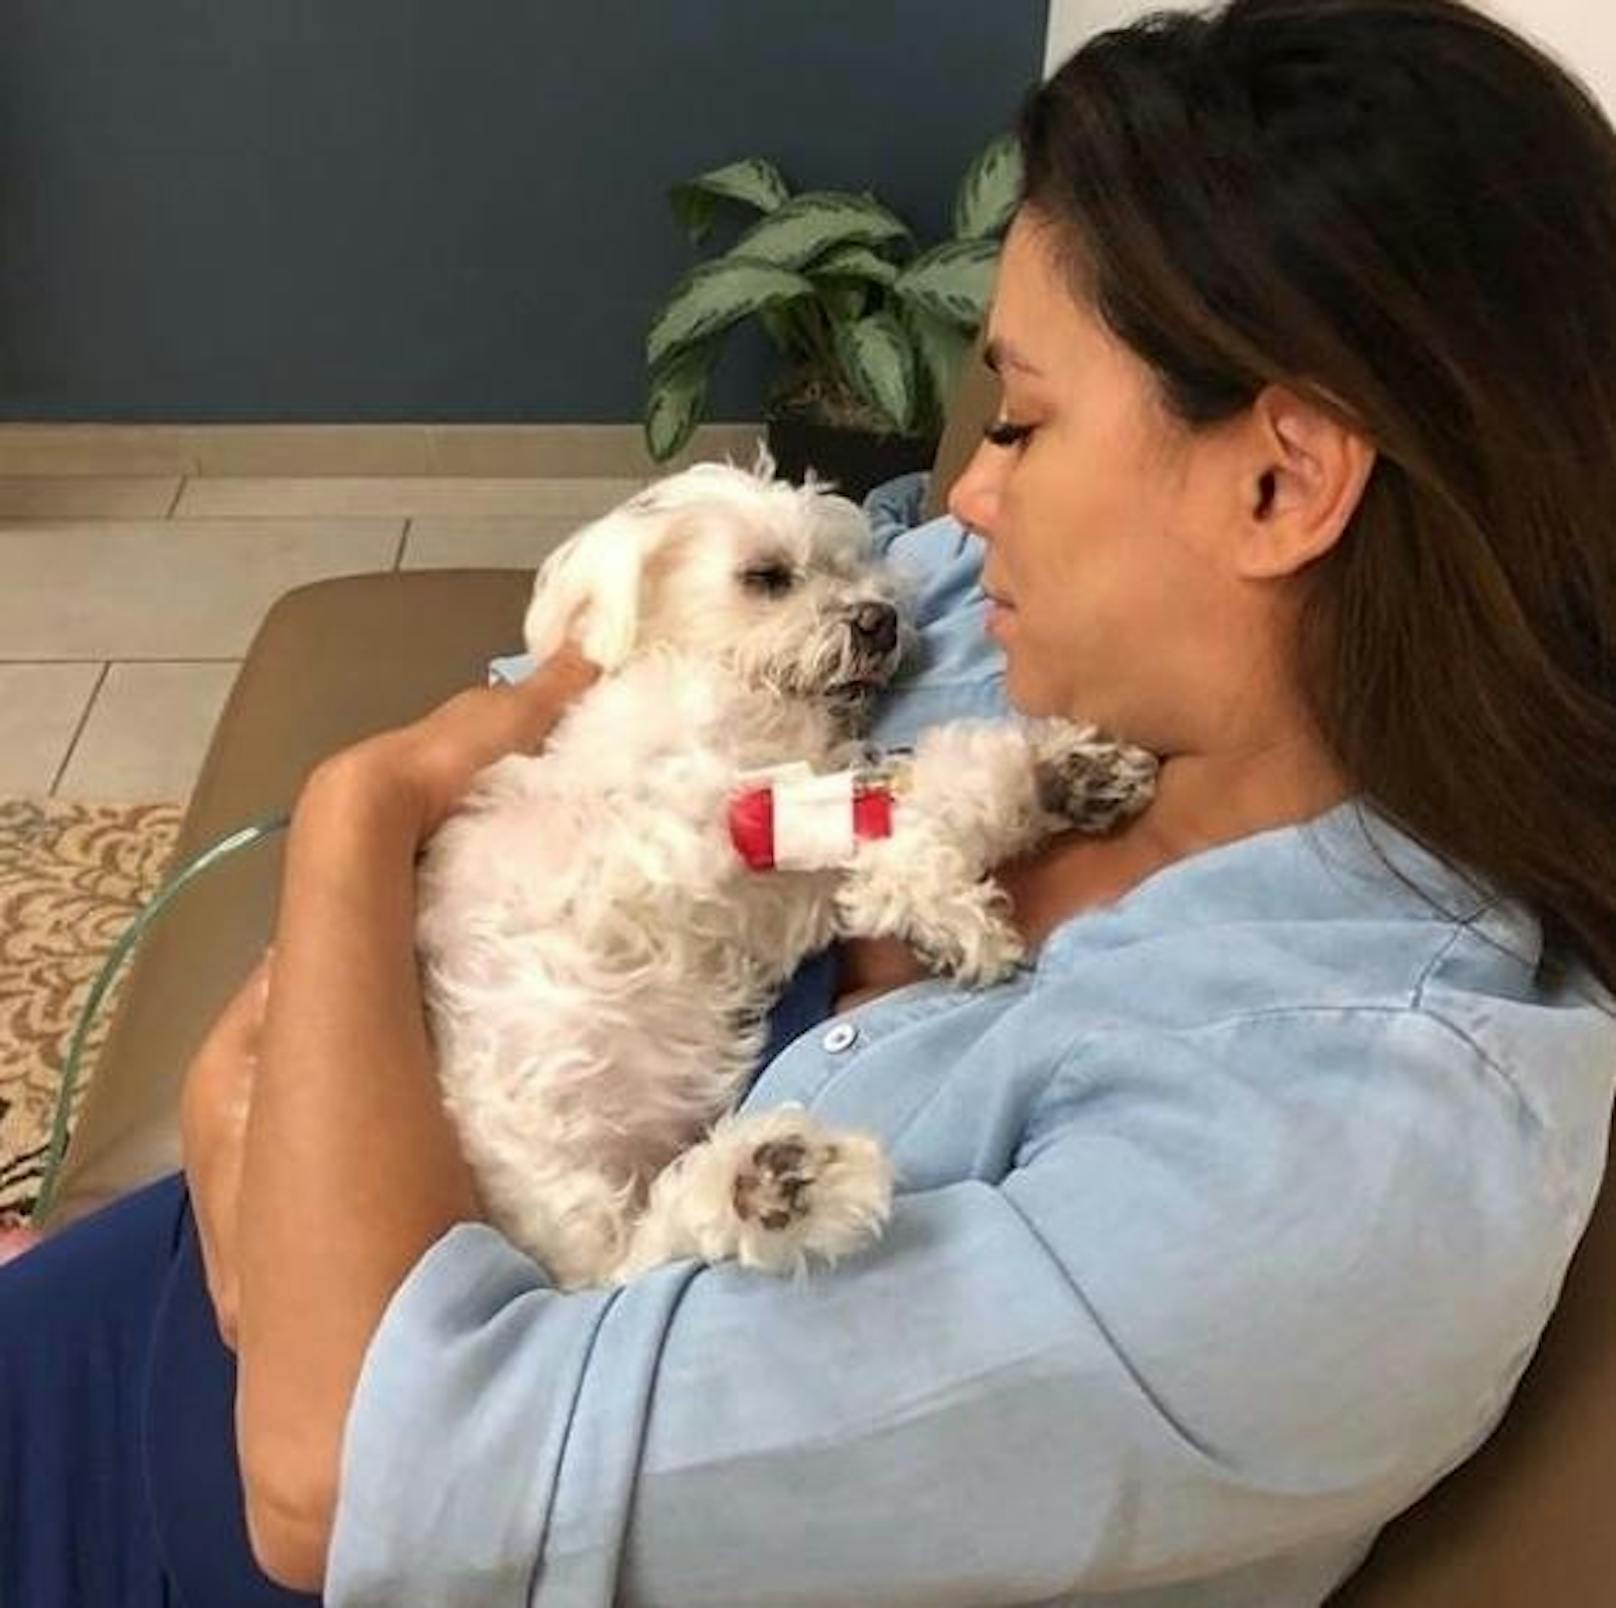 16.06.2018: Mit einem rührenden Posting verabschiedete sich Eva Longoria von ihrem geliebten Hund Jinky, der mit 15 Jahren nach einem Schlaganfall gestorben ist. :(